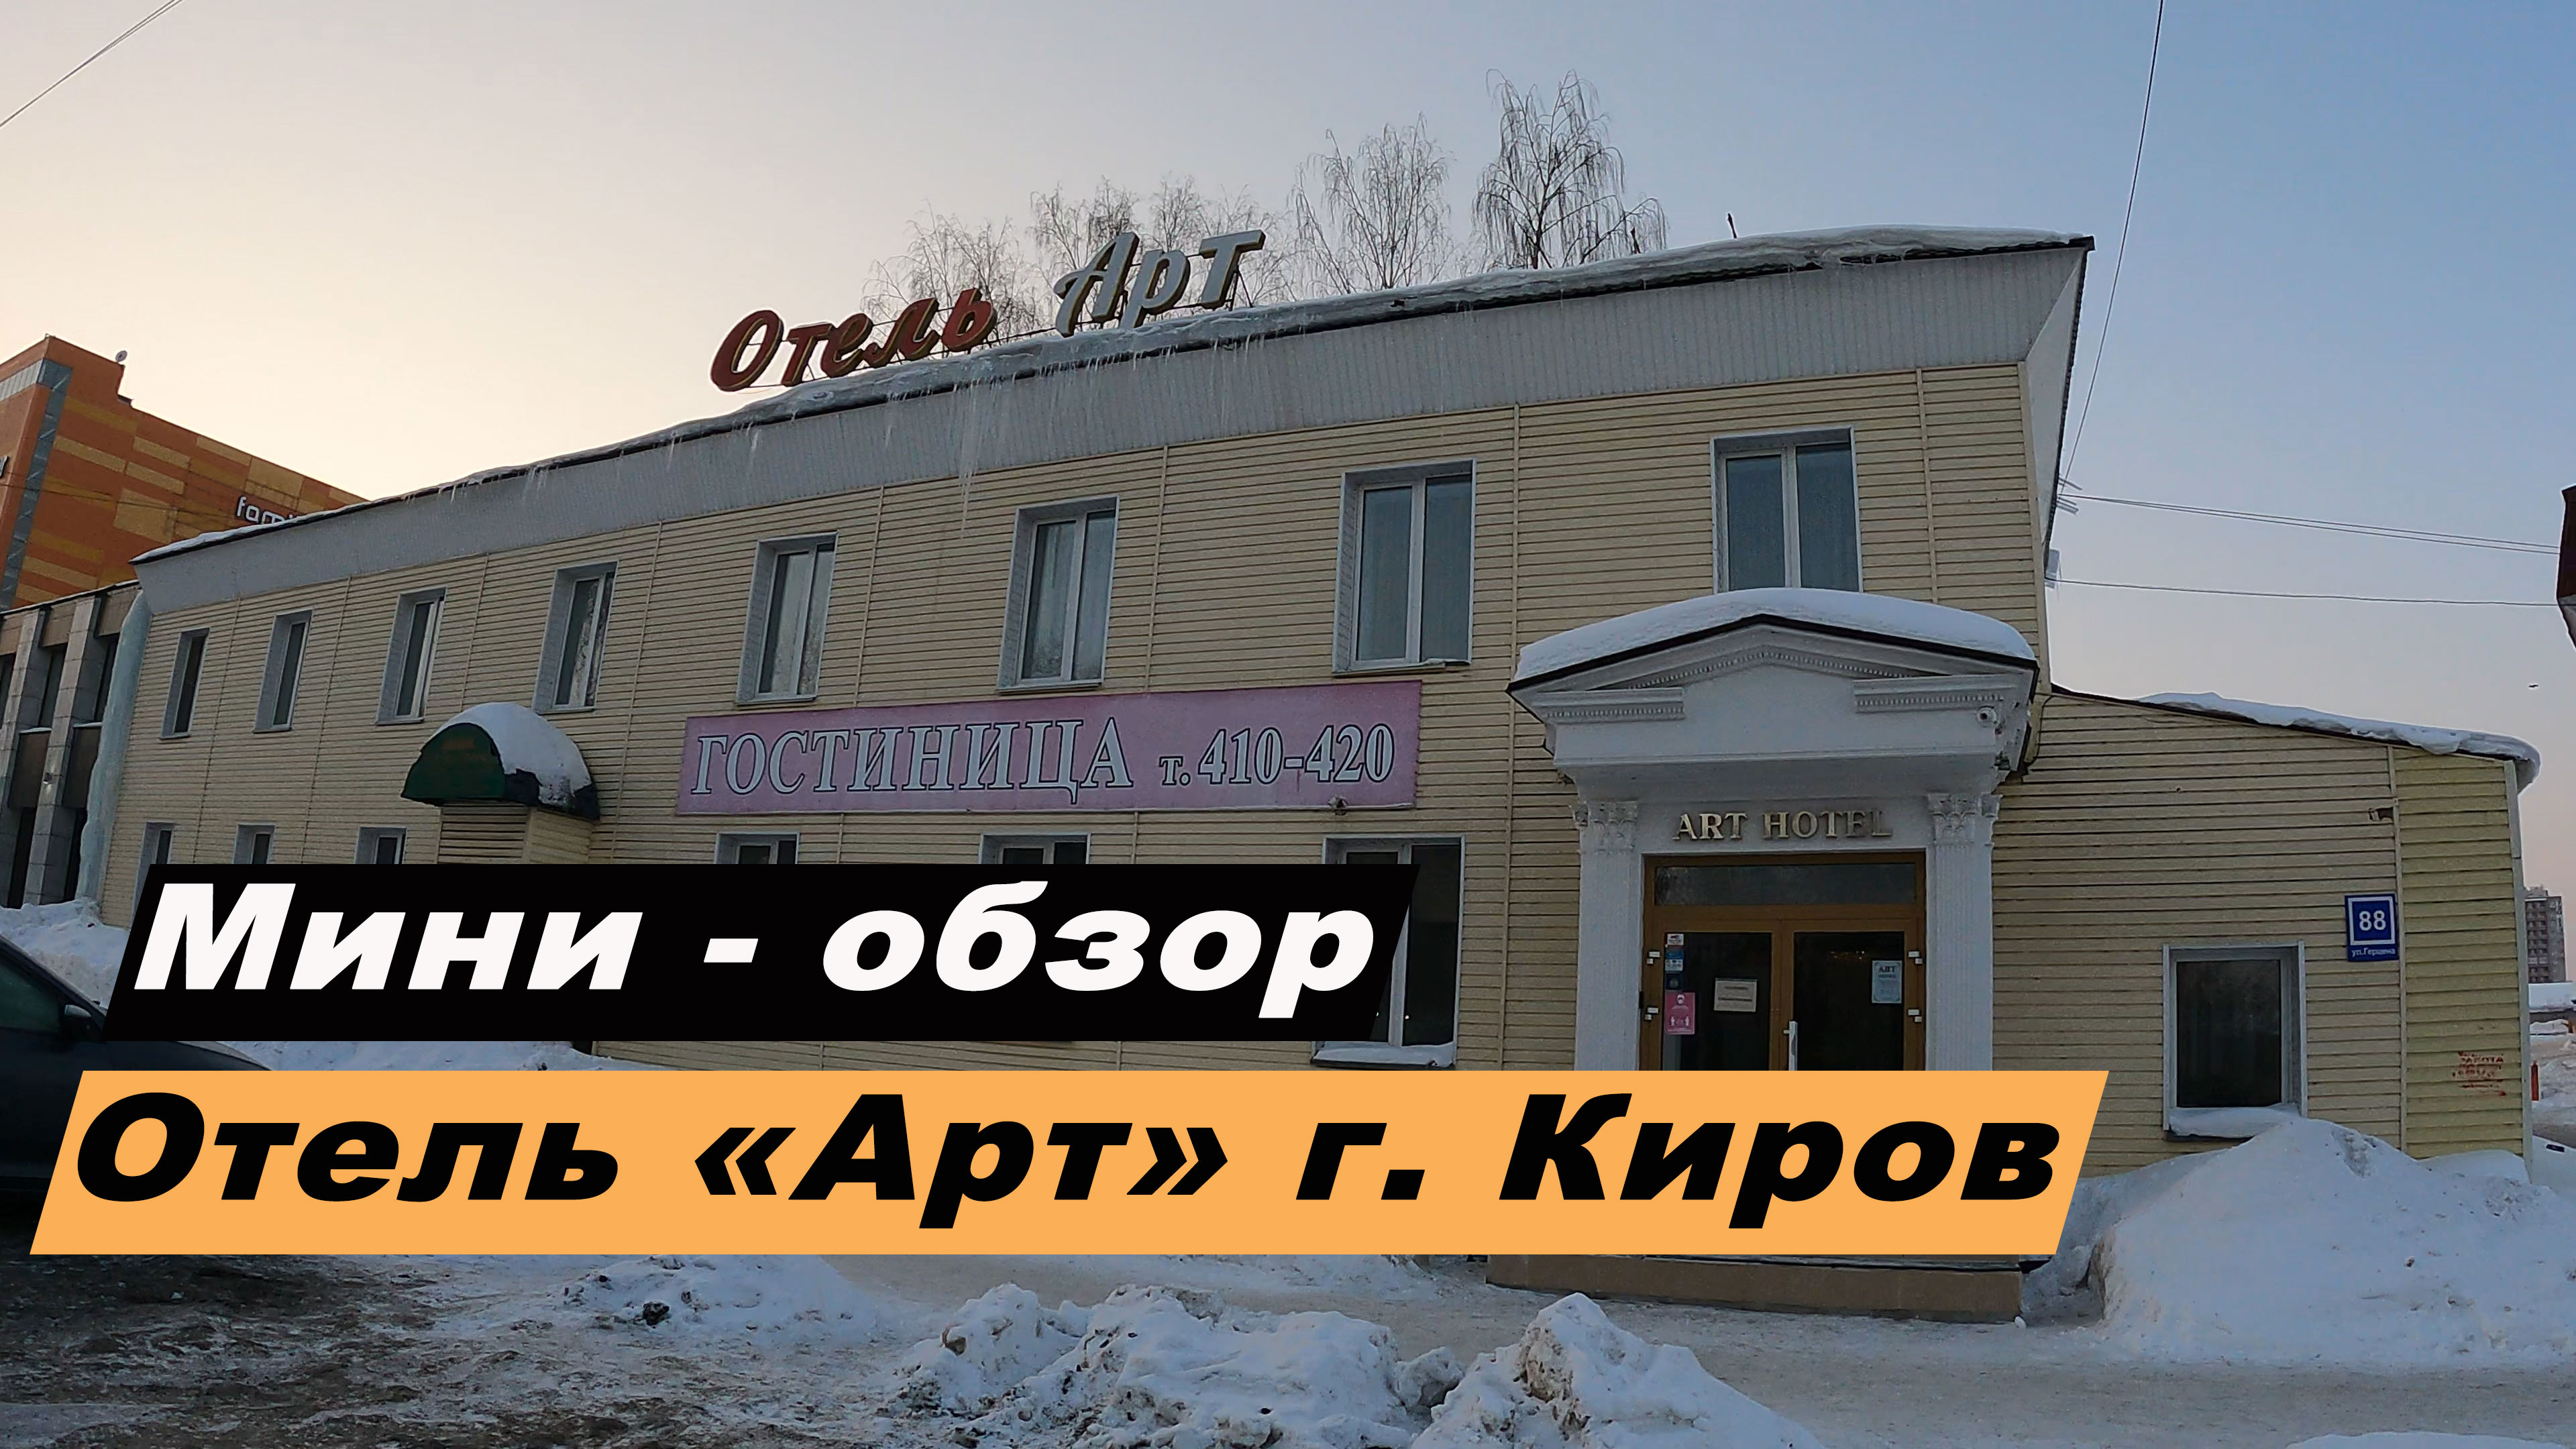 Мини-обзор отеля "Арт" в городе Киров, Кировская область. ART Hotel.